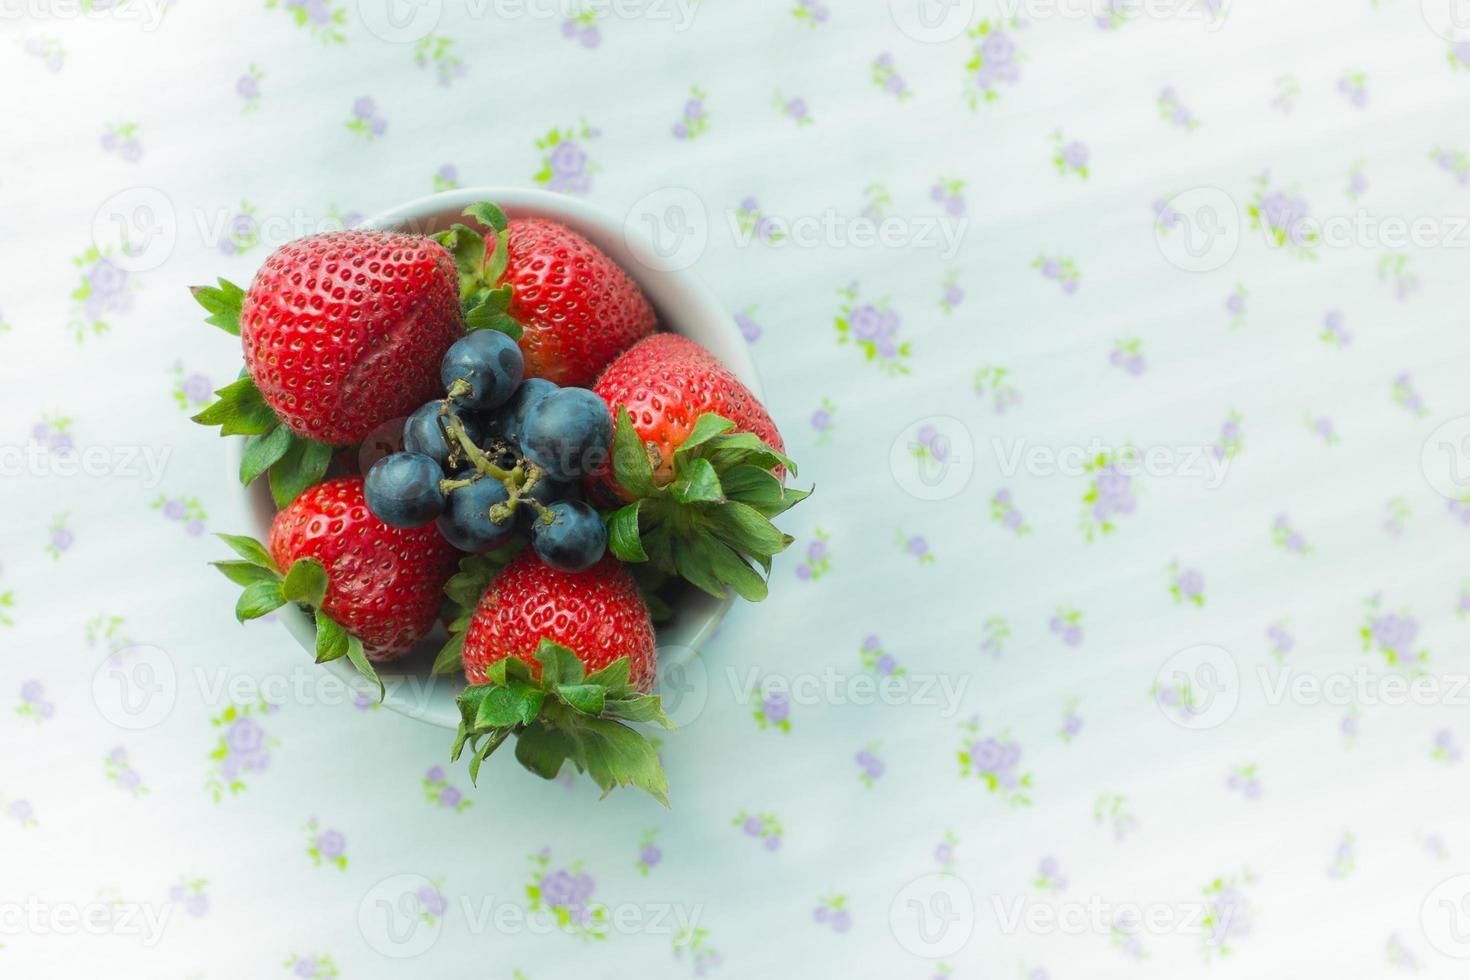 jordgubbar och blåbär i en skål foto